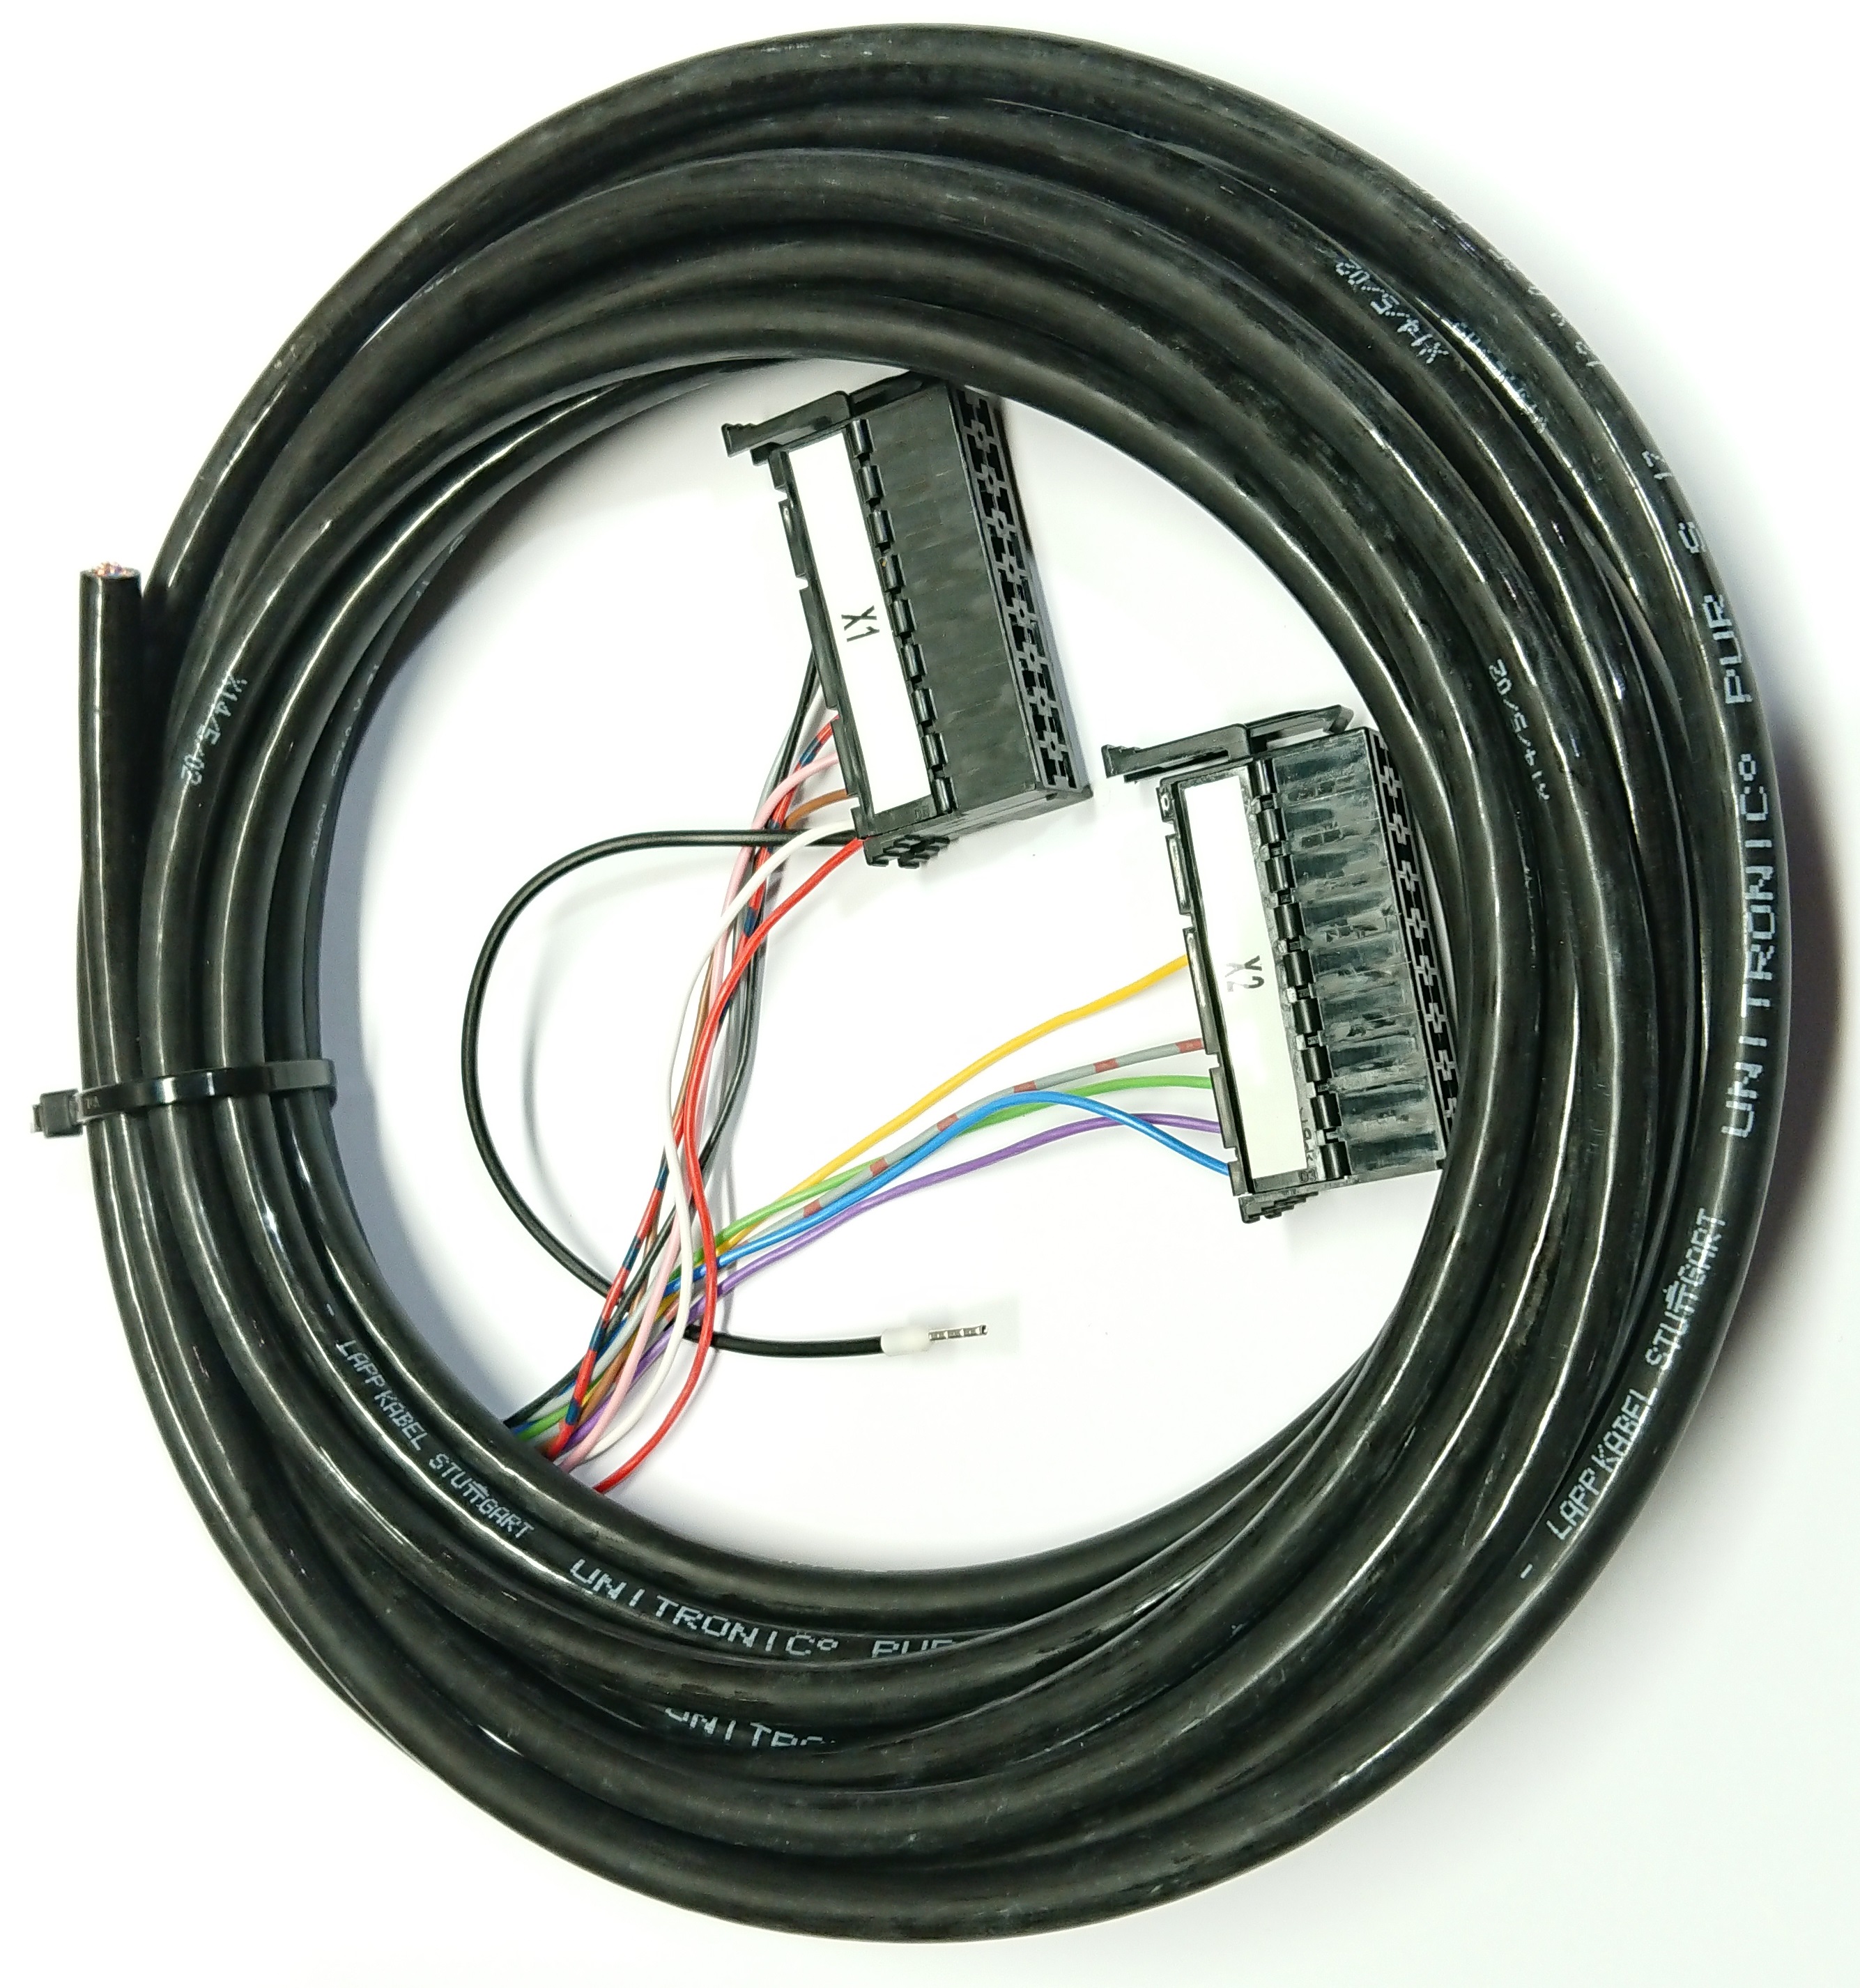 Kabel manöverreglage R360